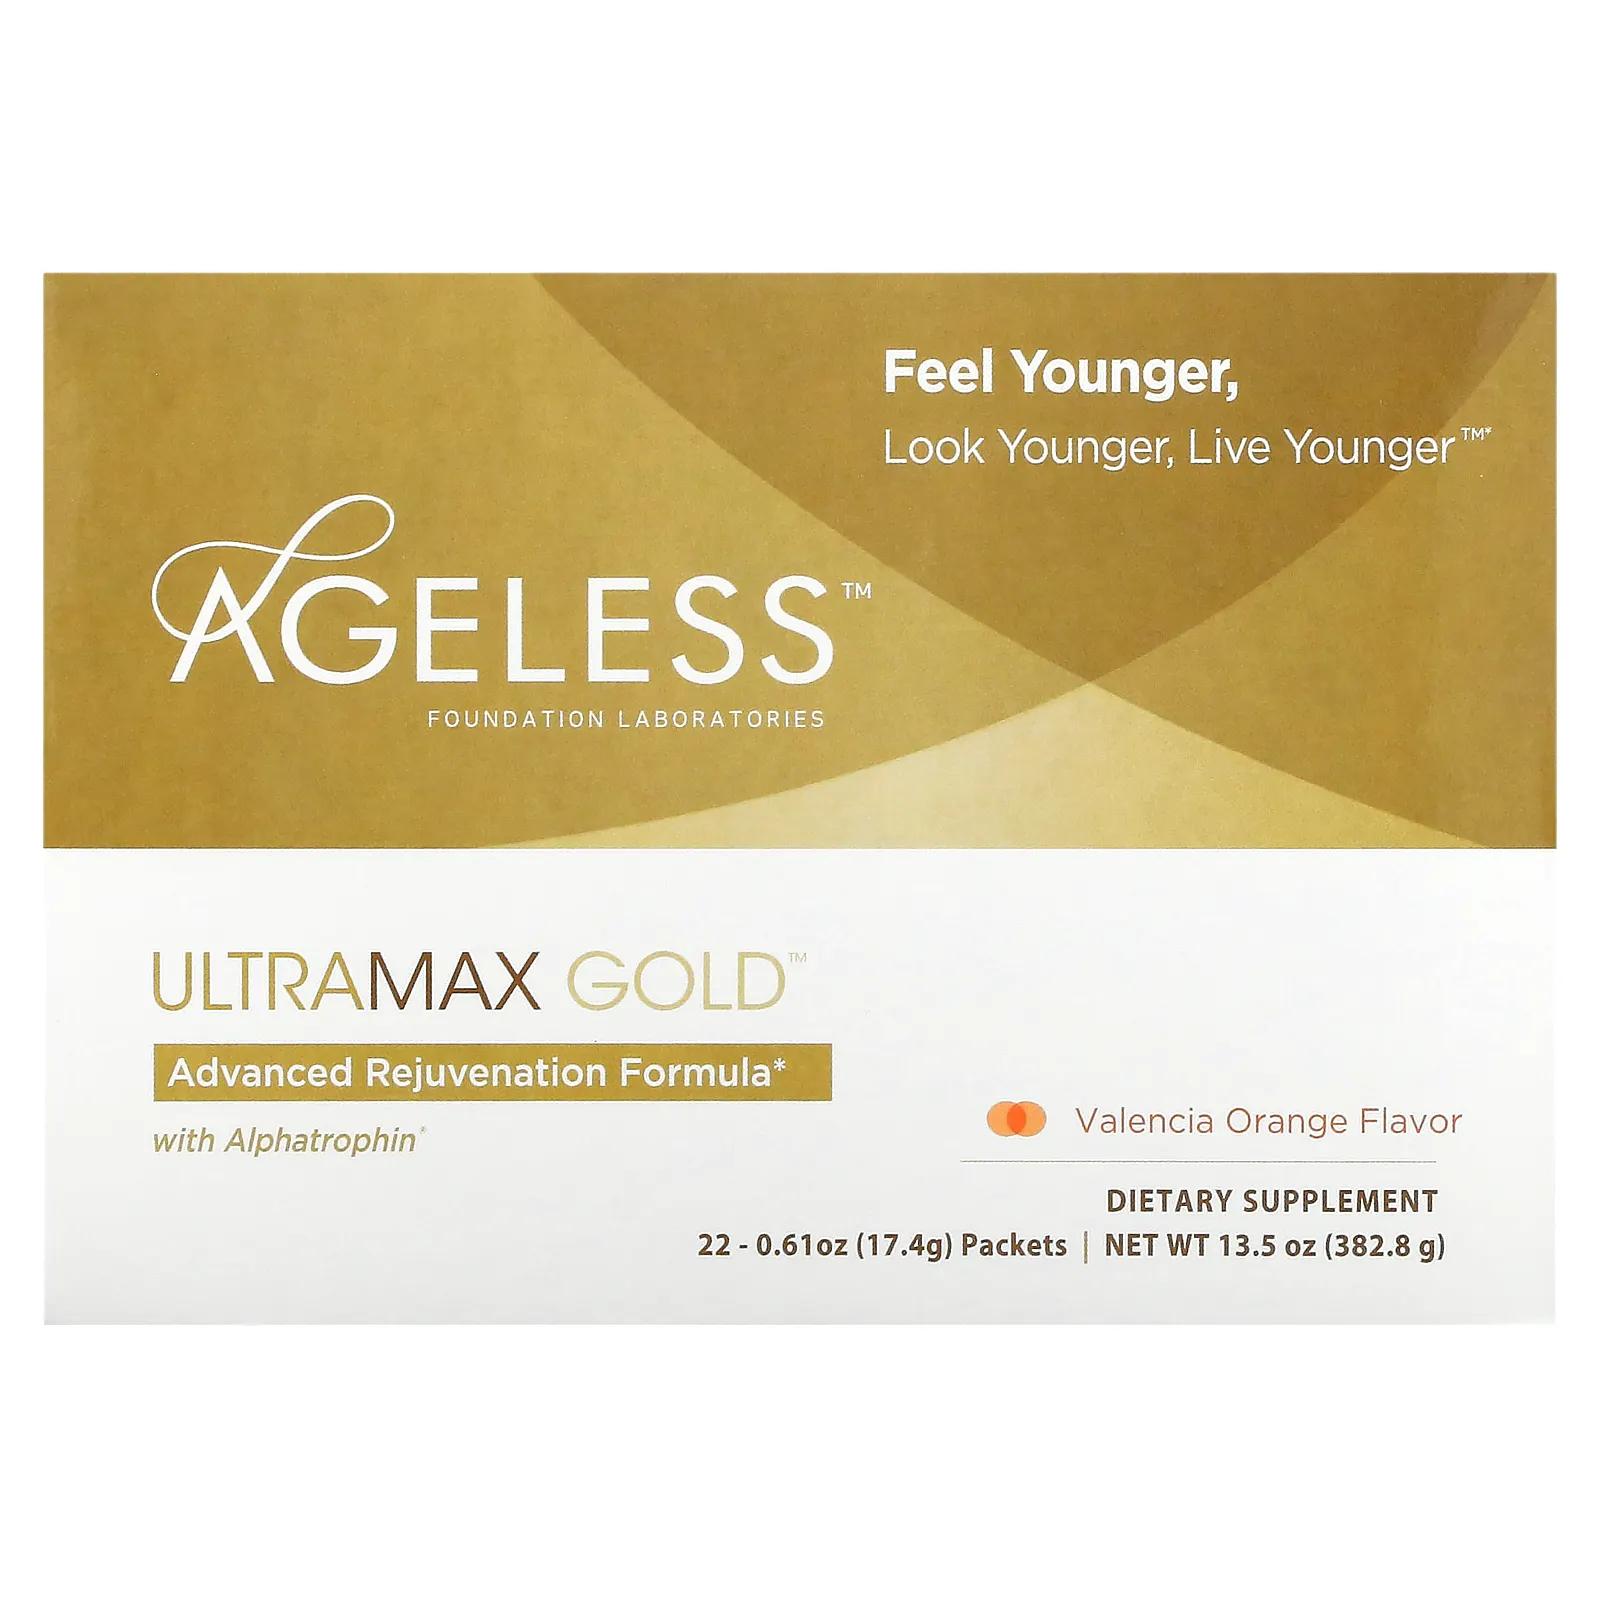 цена Ageless Foundation Laboratories UltraMax Gold улучшенная формула омоложения с альфатрофином со вкусом валенсийского апельсина 22 пакетика 13,5 унции (17,4 г) каждый